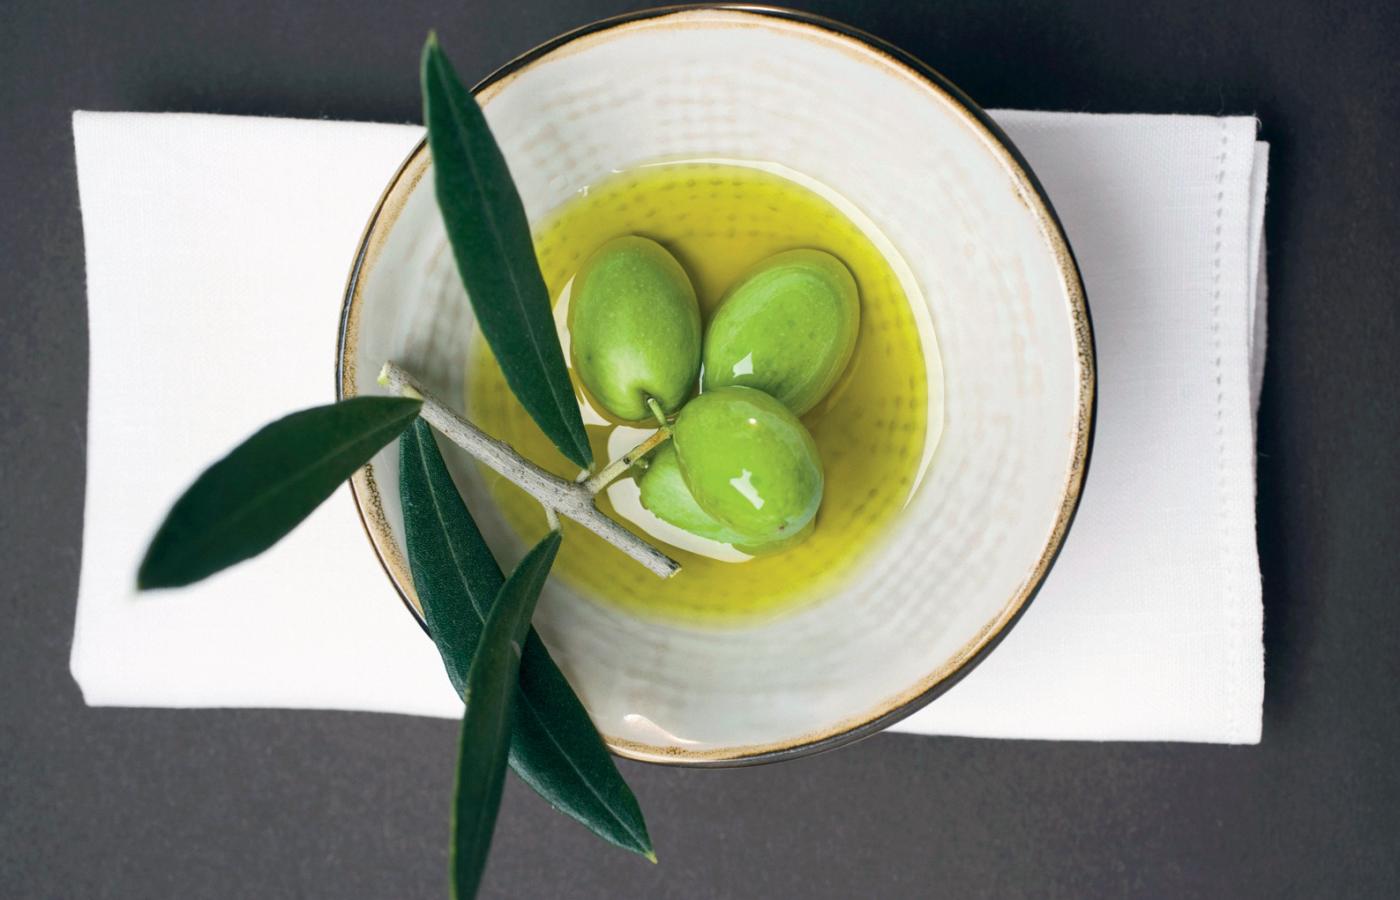 Kolor oliwek zależy od momentu zbiorów, a nie od gatunku drzew oliwnych. Te zielone zbierane są najwcześniej.